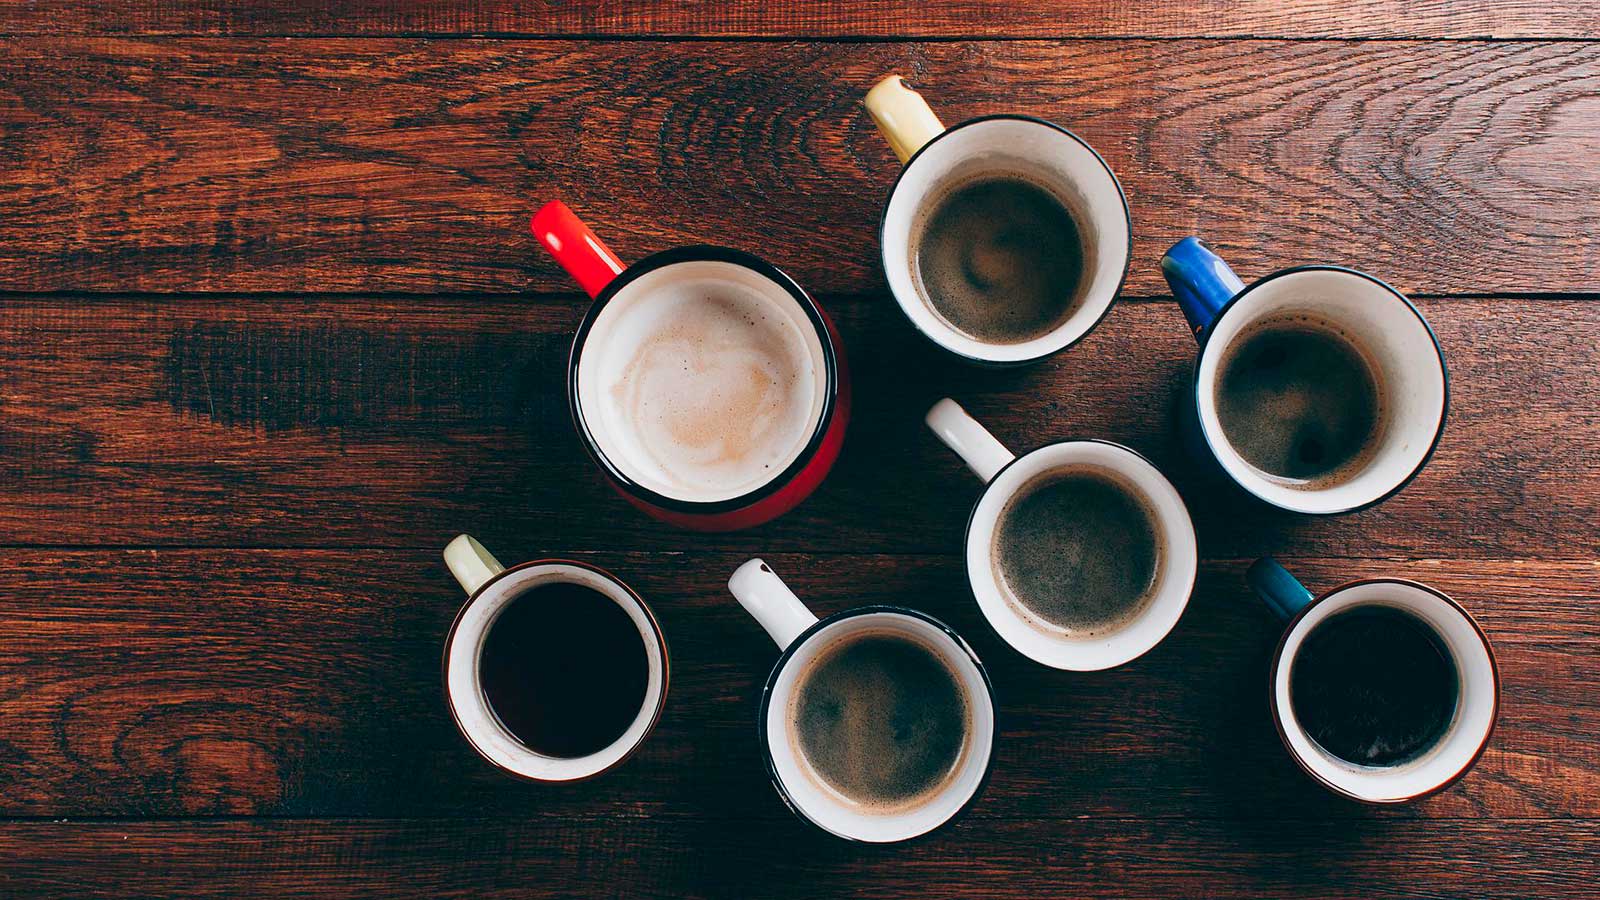 Pöydällä on erikokoisia ja erivärisiä kahvikuppeja, joissa on erilaista kahvia.